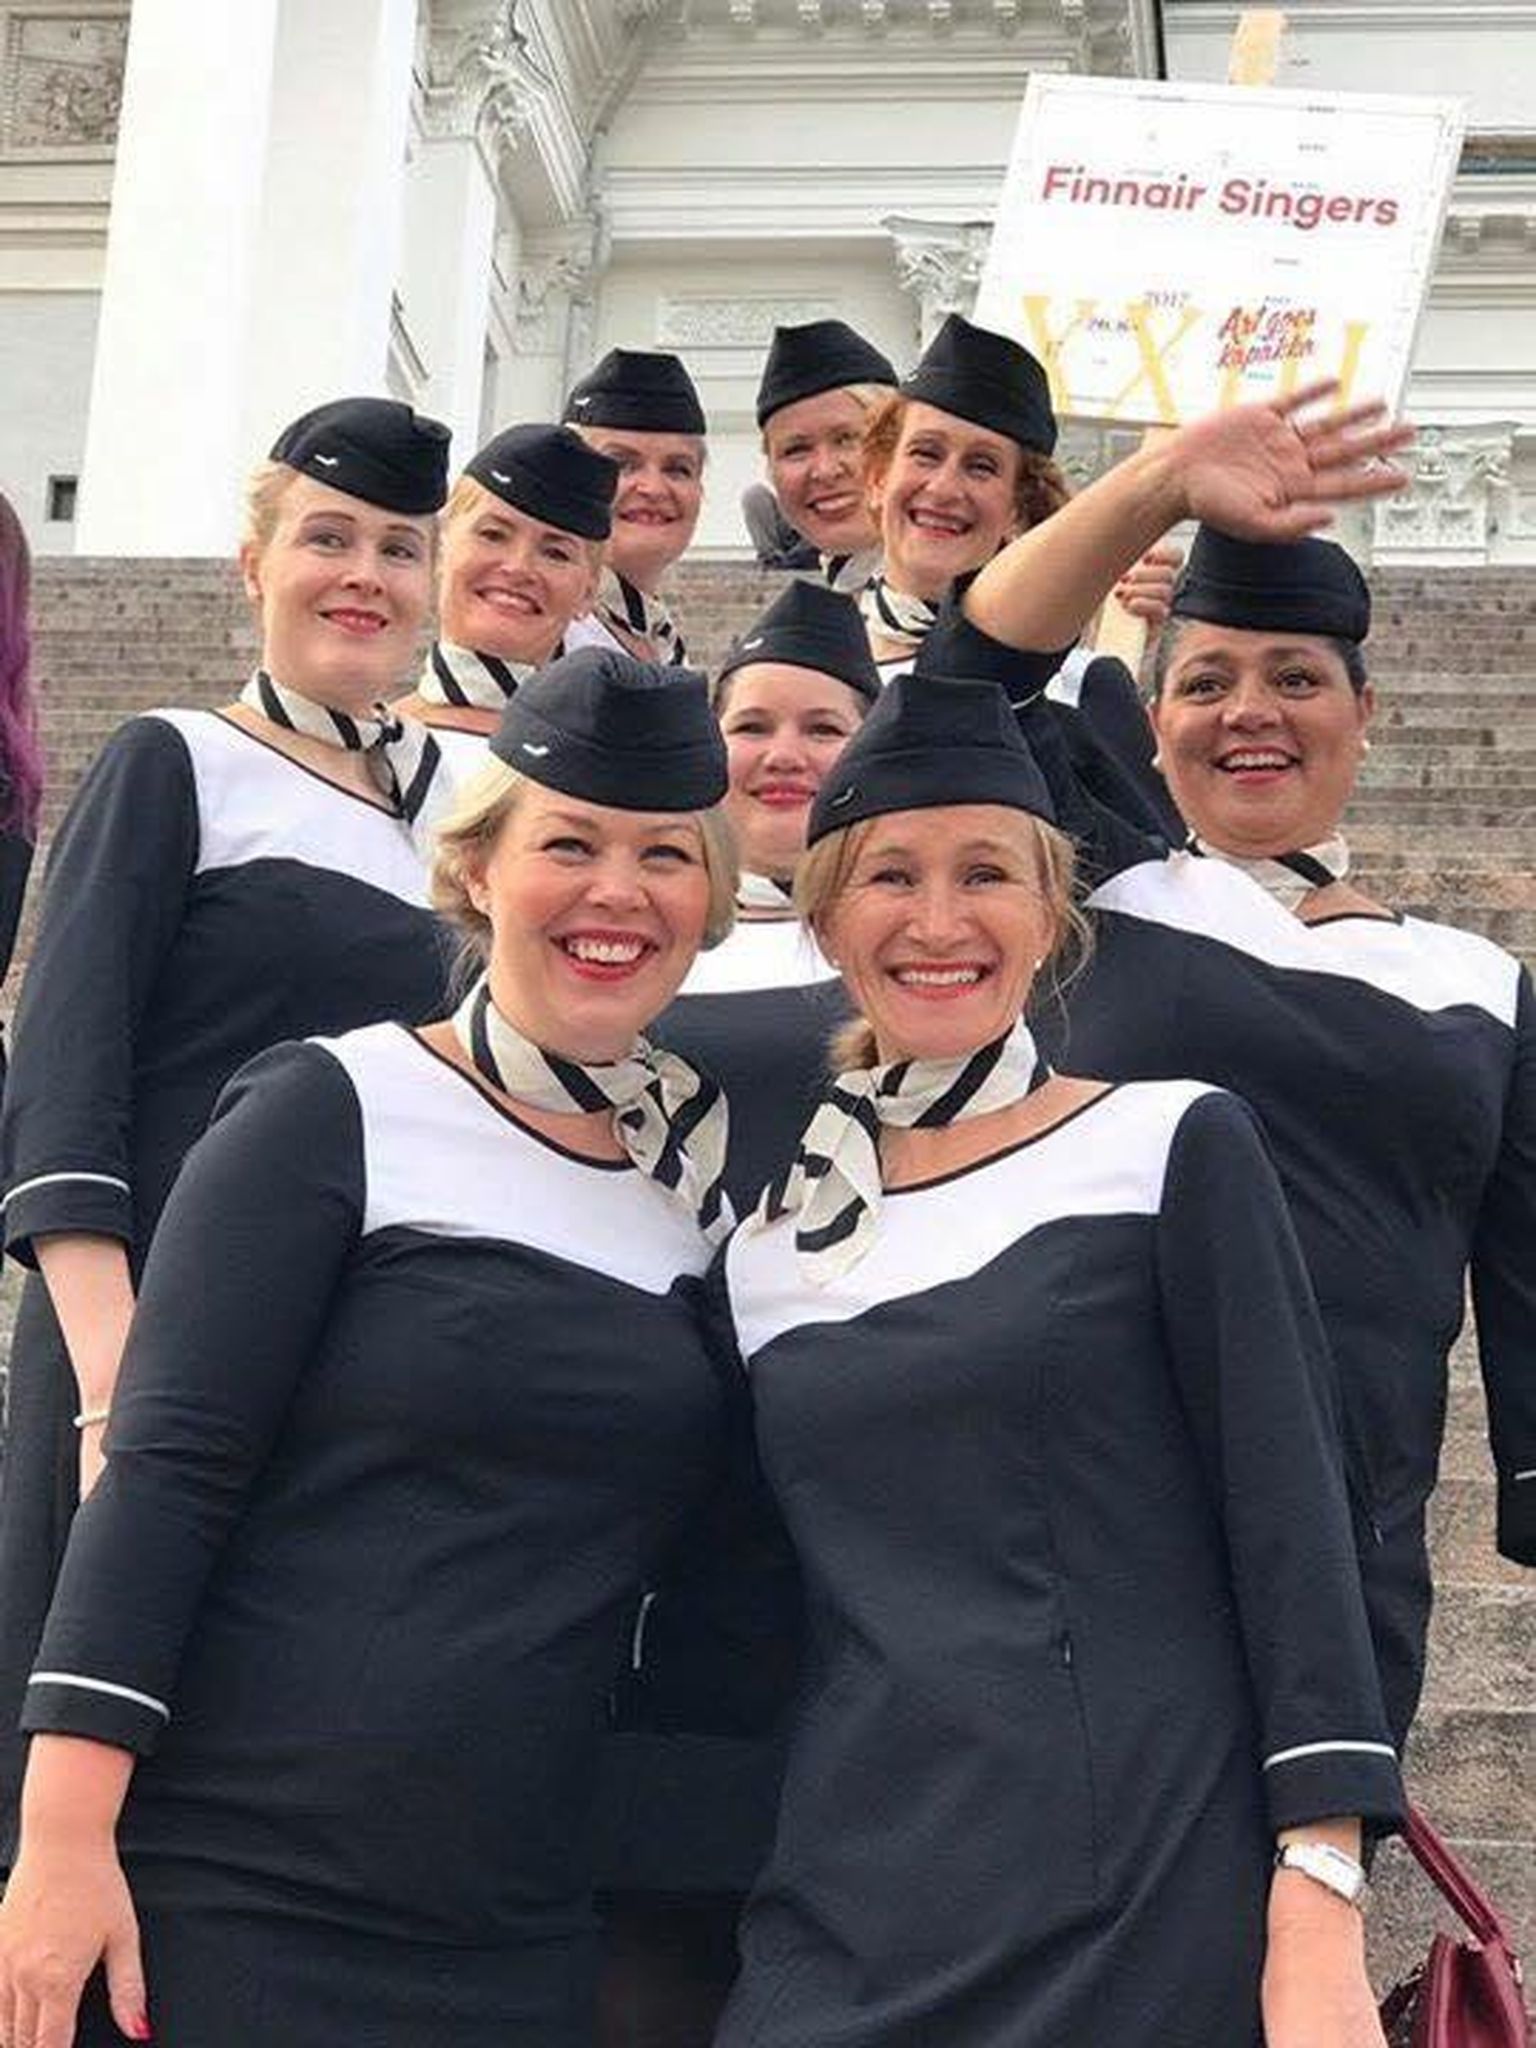 Soome stujardesside koor Finn­air Singers esineb koos Jana Tringi erakooli laulustuudio lastega kontserdil “Kulla kutse”, mis on pühendatud Eesti Vabariigi 101. aastapäevale.